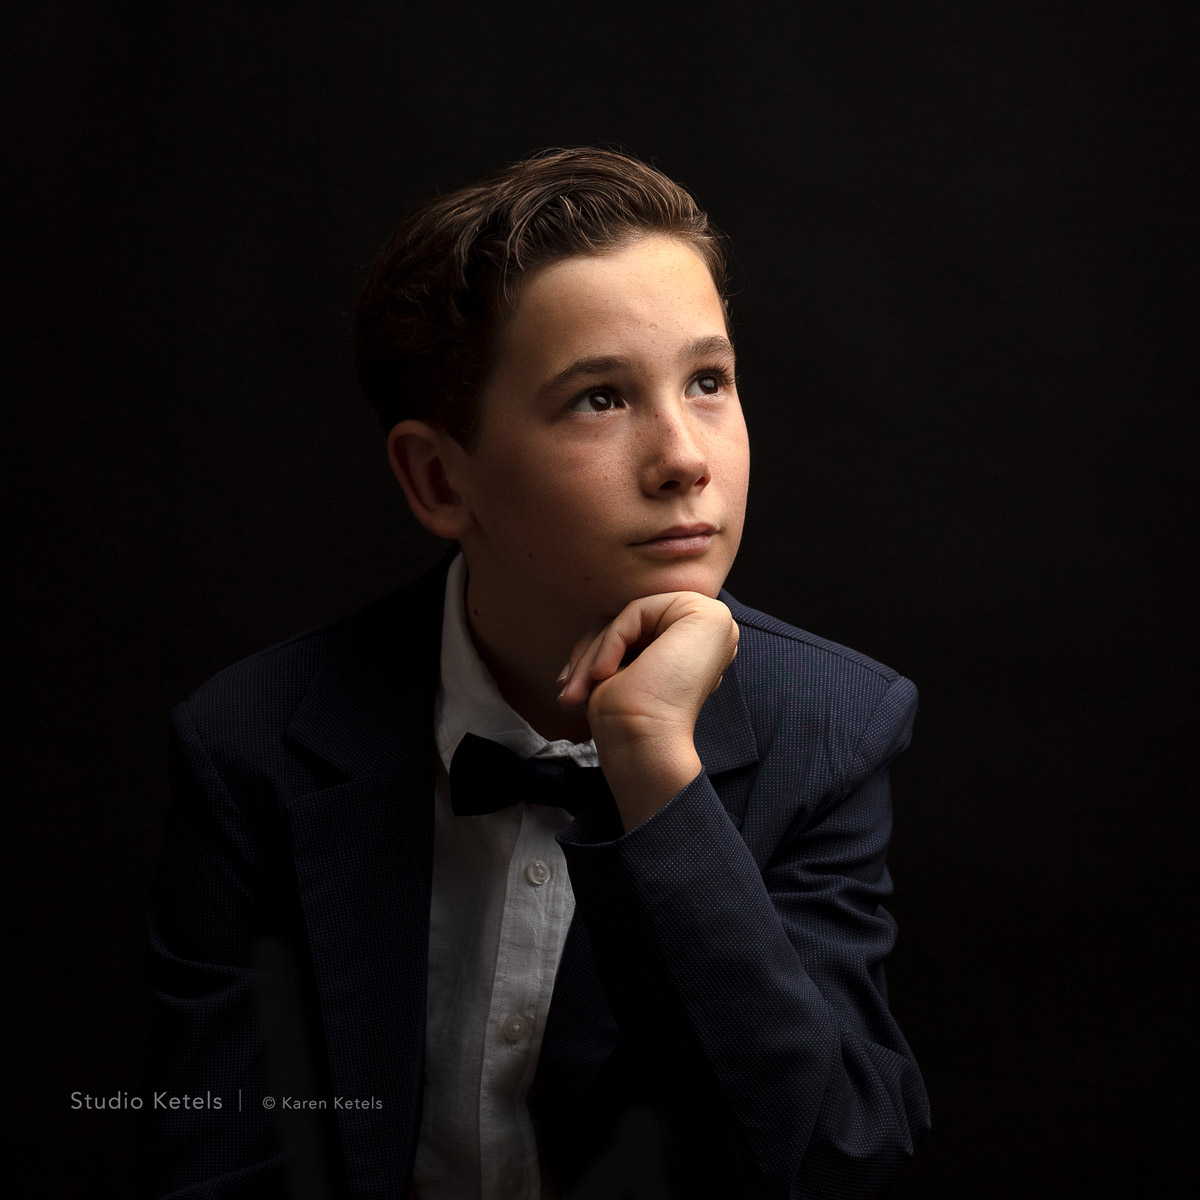 communieportret jongen op zwarte achtergrond, door Studio Ketels